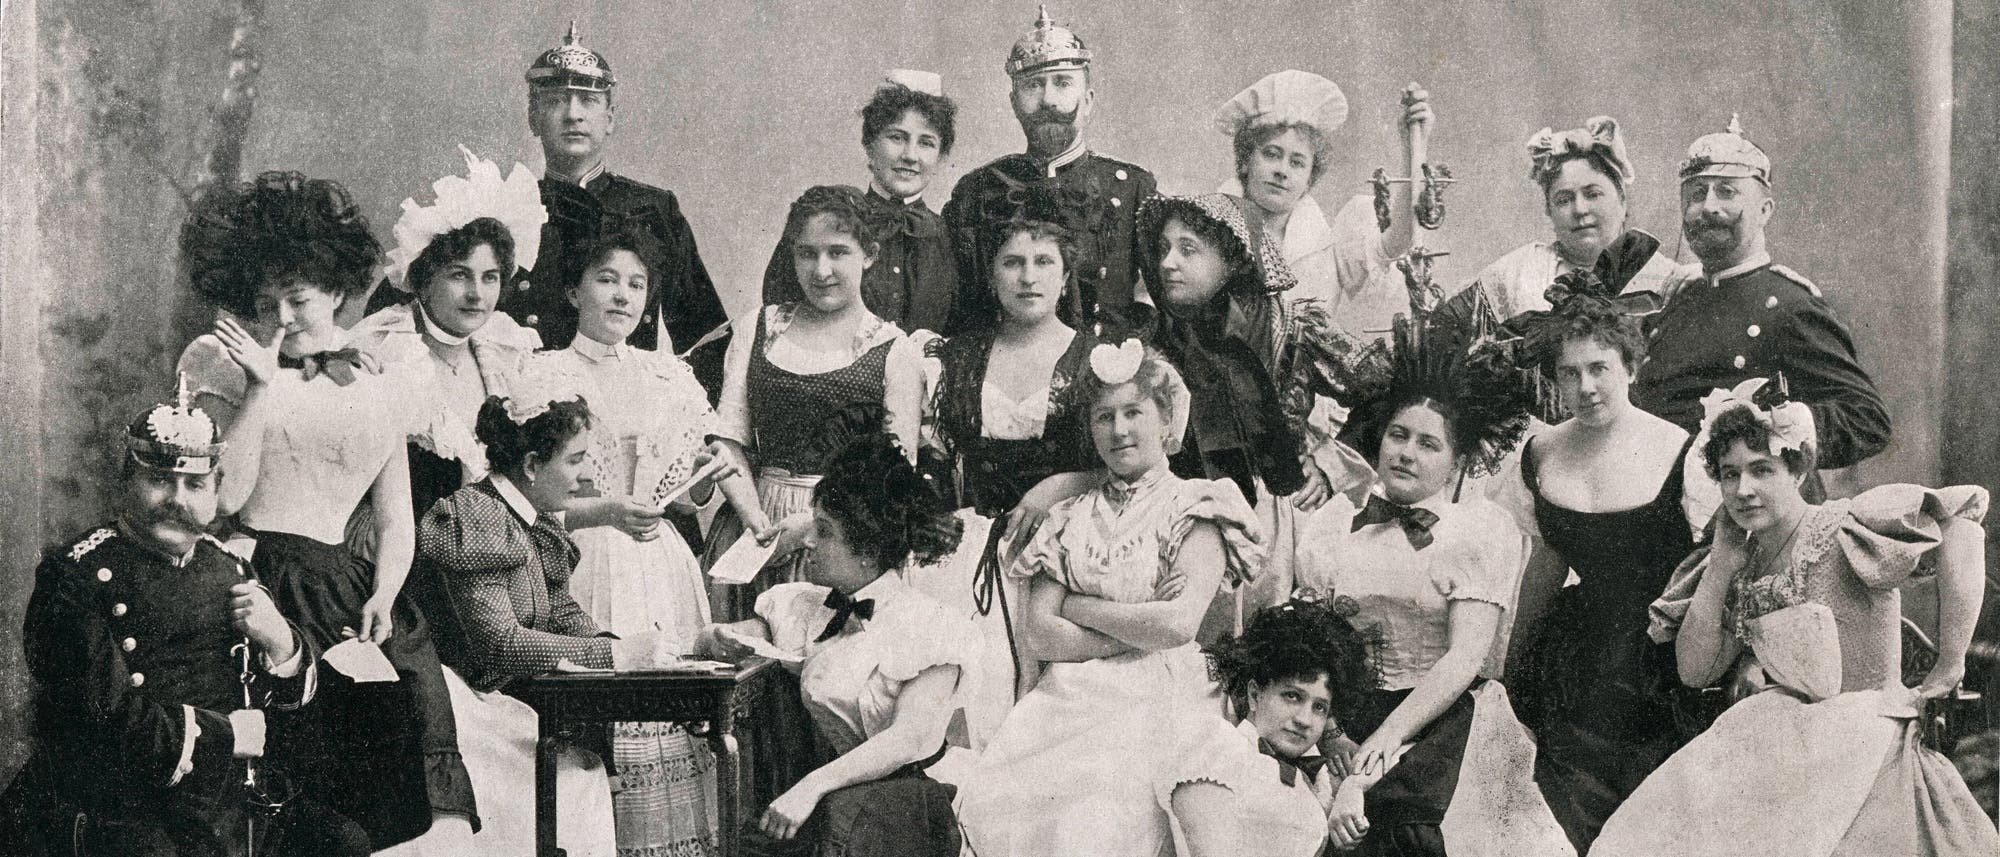 Festkomitee des Berliner Gesindeballs im Jahr 1898. Symbolbild für eine ausgelassene Gesellschaft wilhelminischer Zeit.